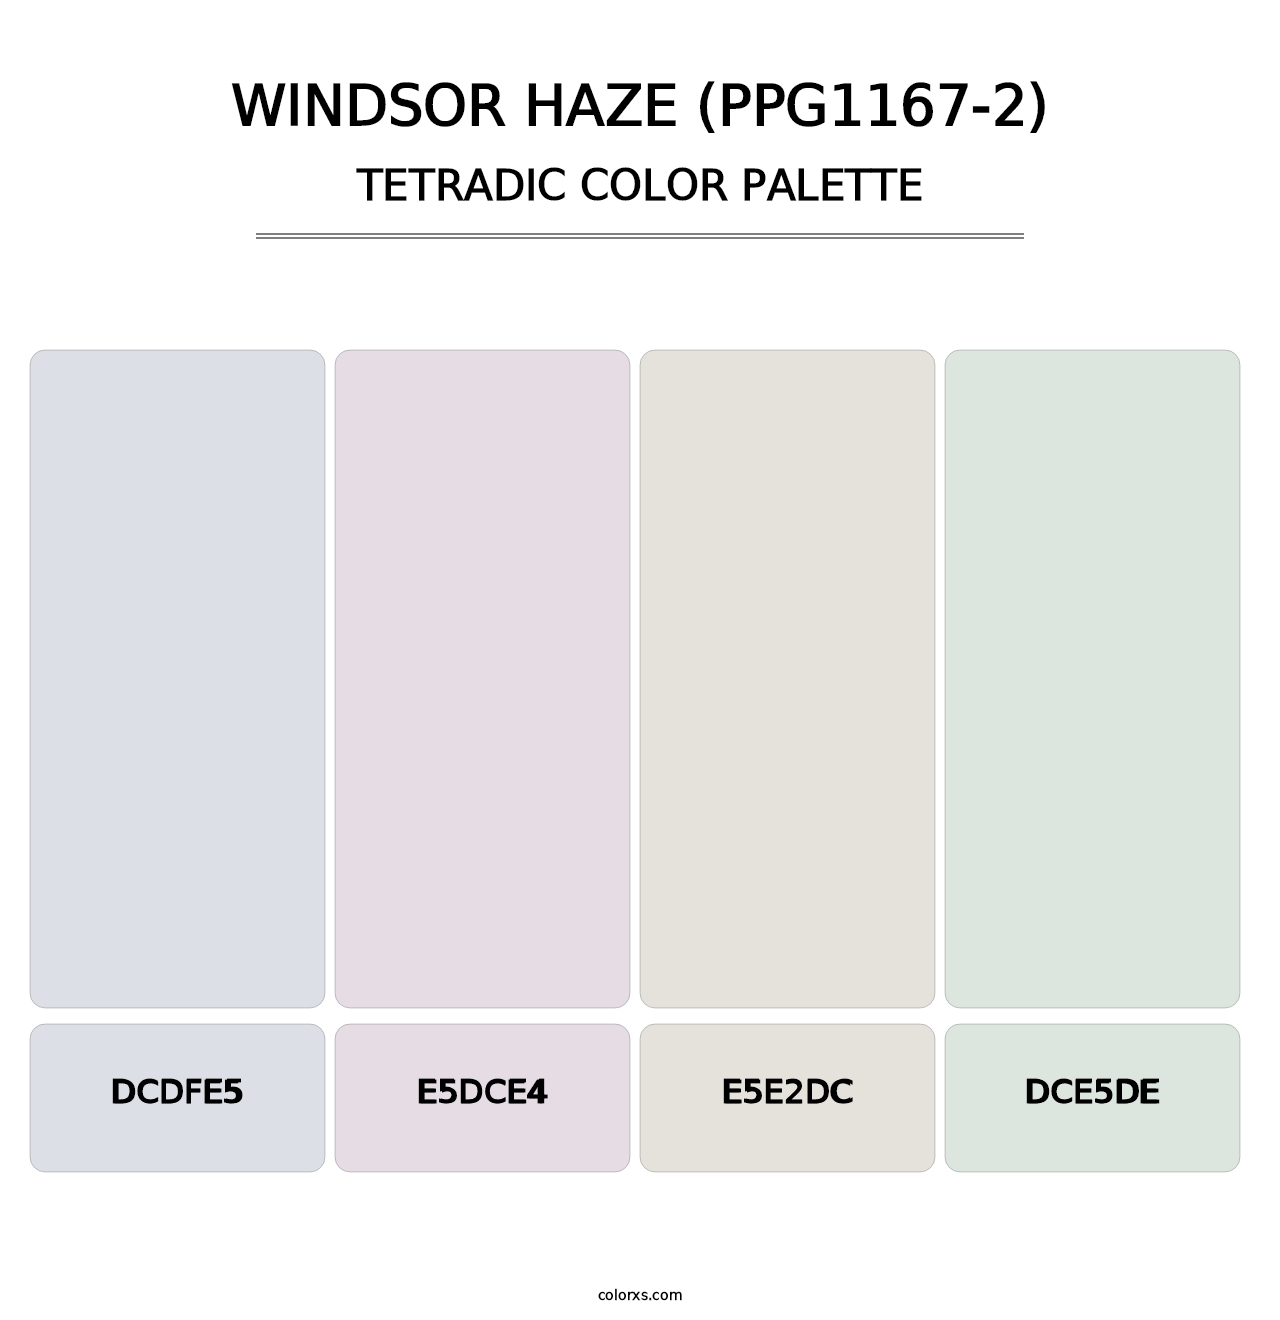 Windsor Haze (PPG1167-2) - Tetradic Color Palette